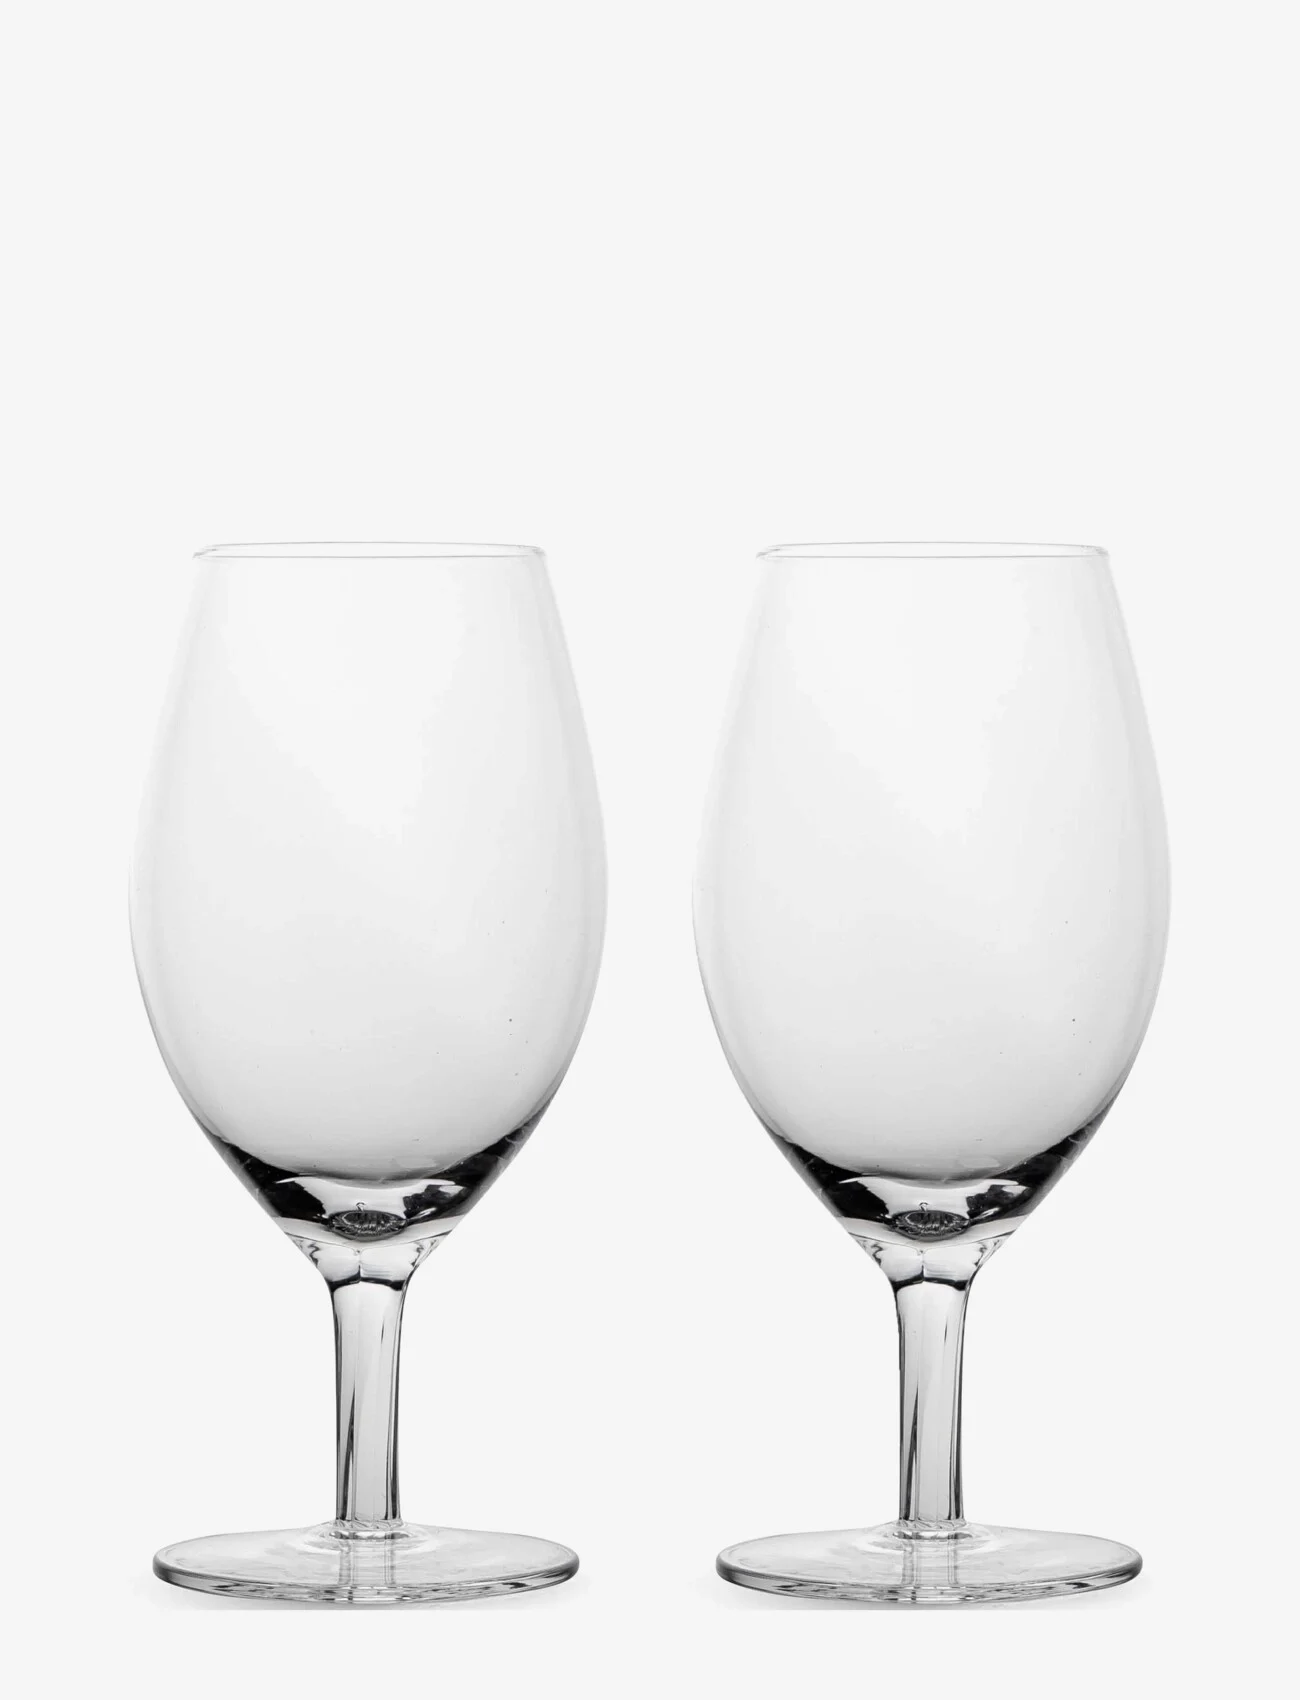 Sagaform - Saga drinking glass, 2-pack - madalaimad hinnad - clear - 0